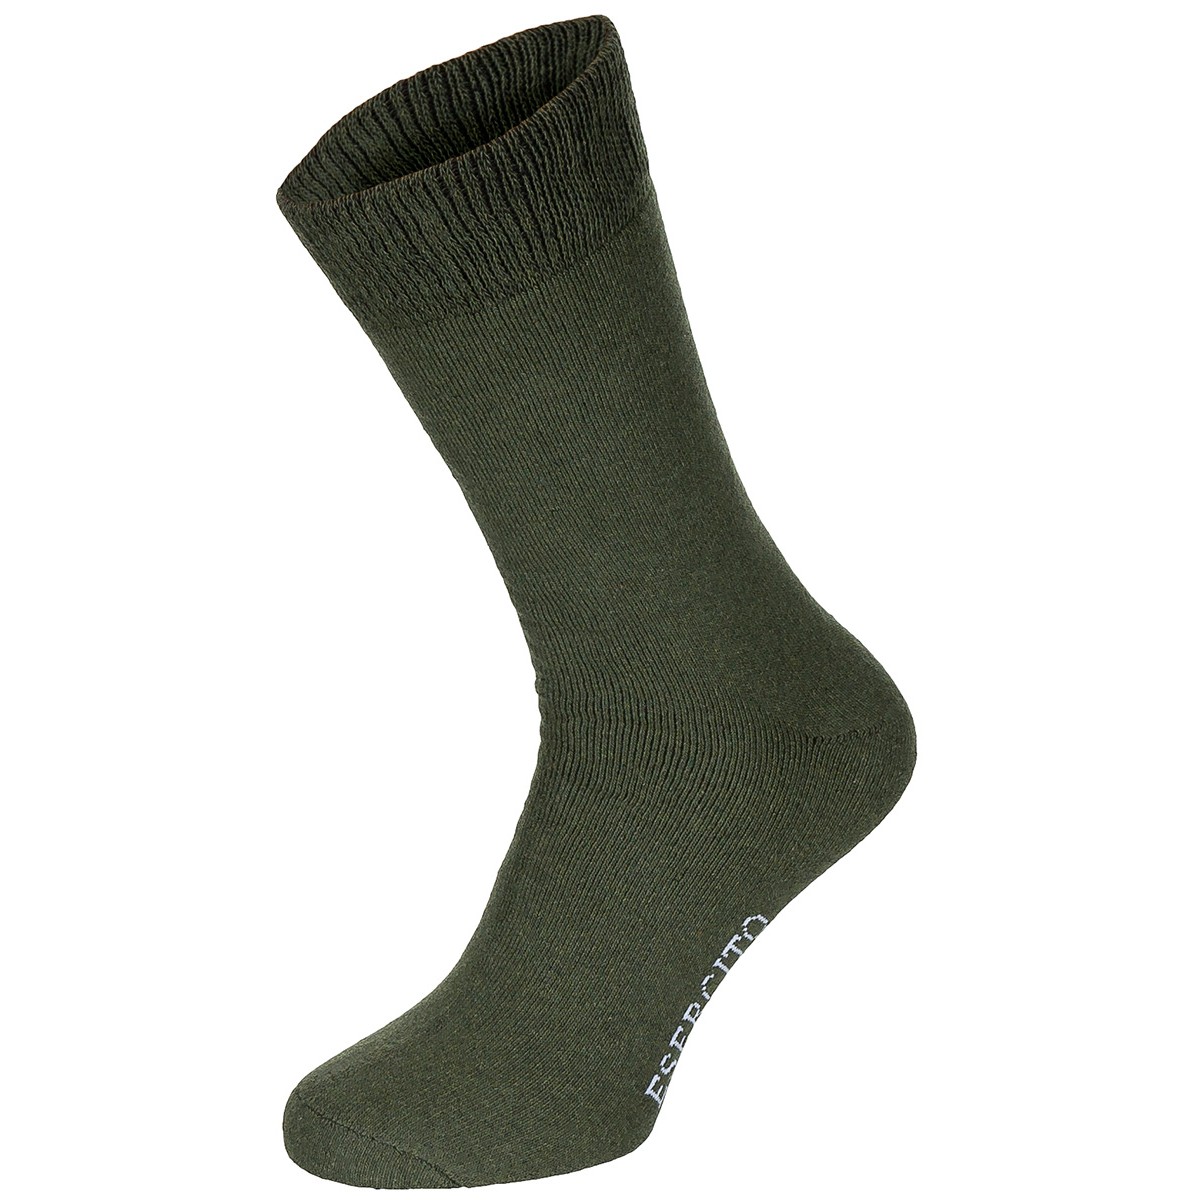 Socken,  „Esercito“,  oliv, halblang,  3er Pack